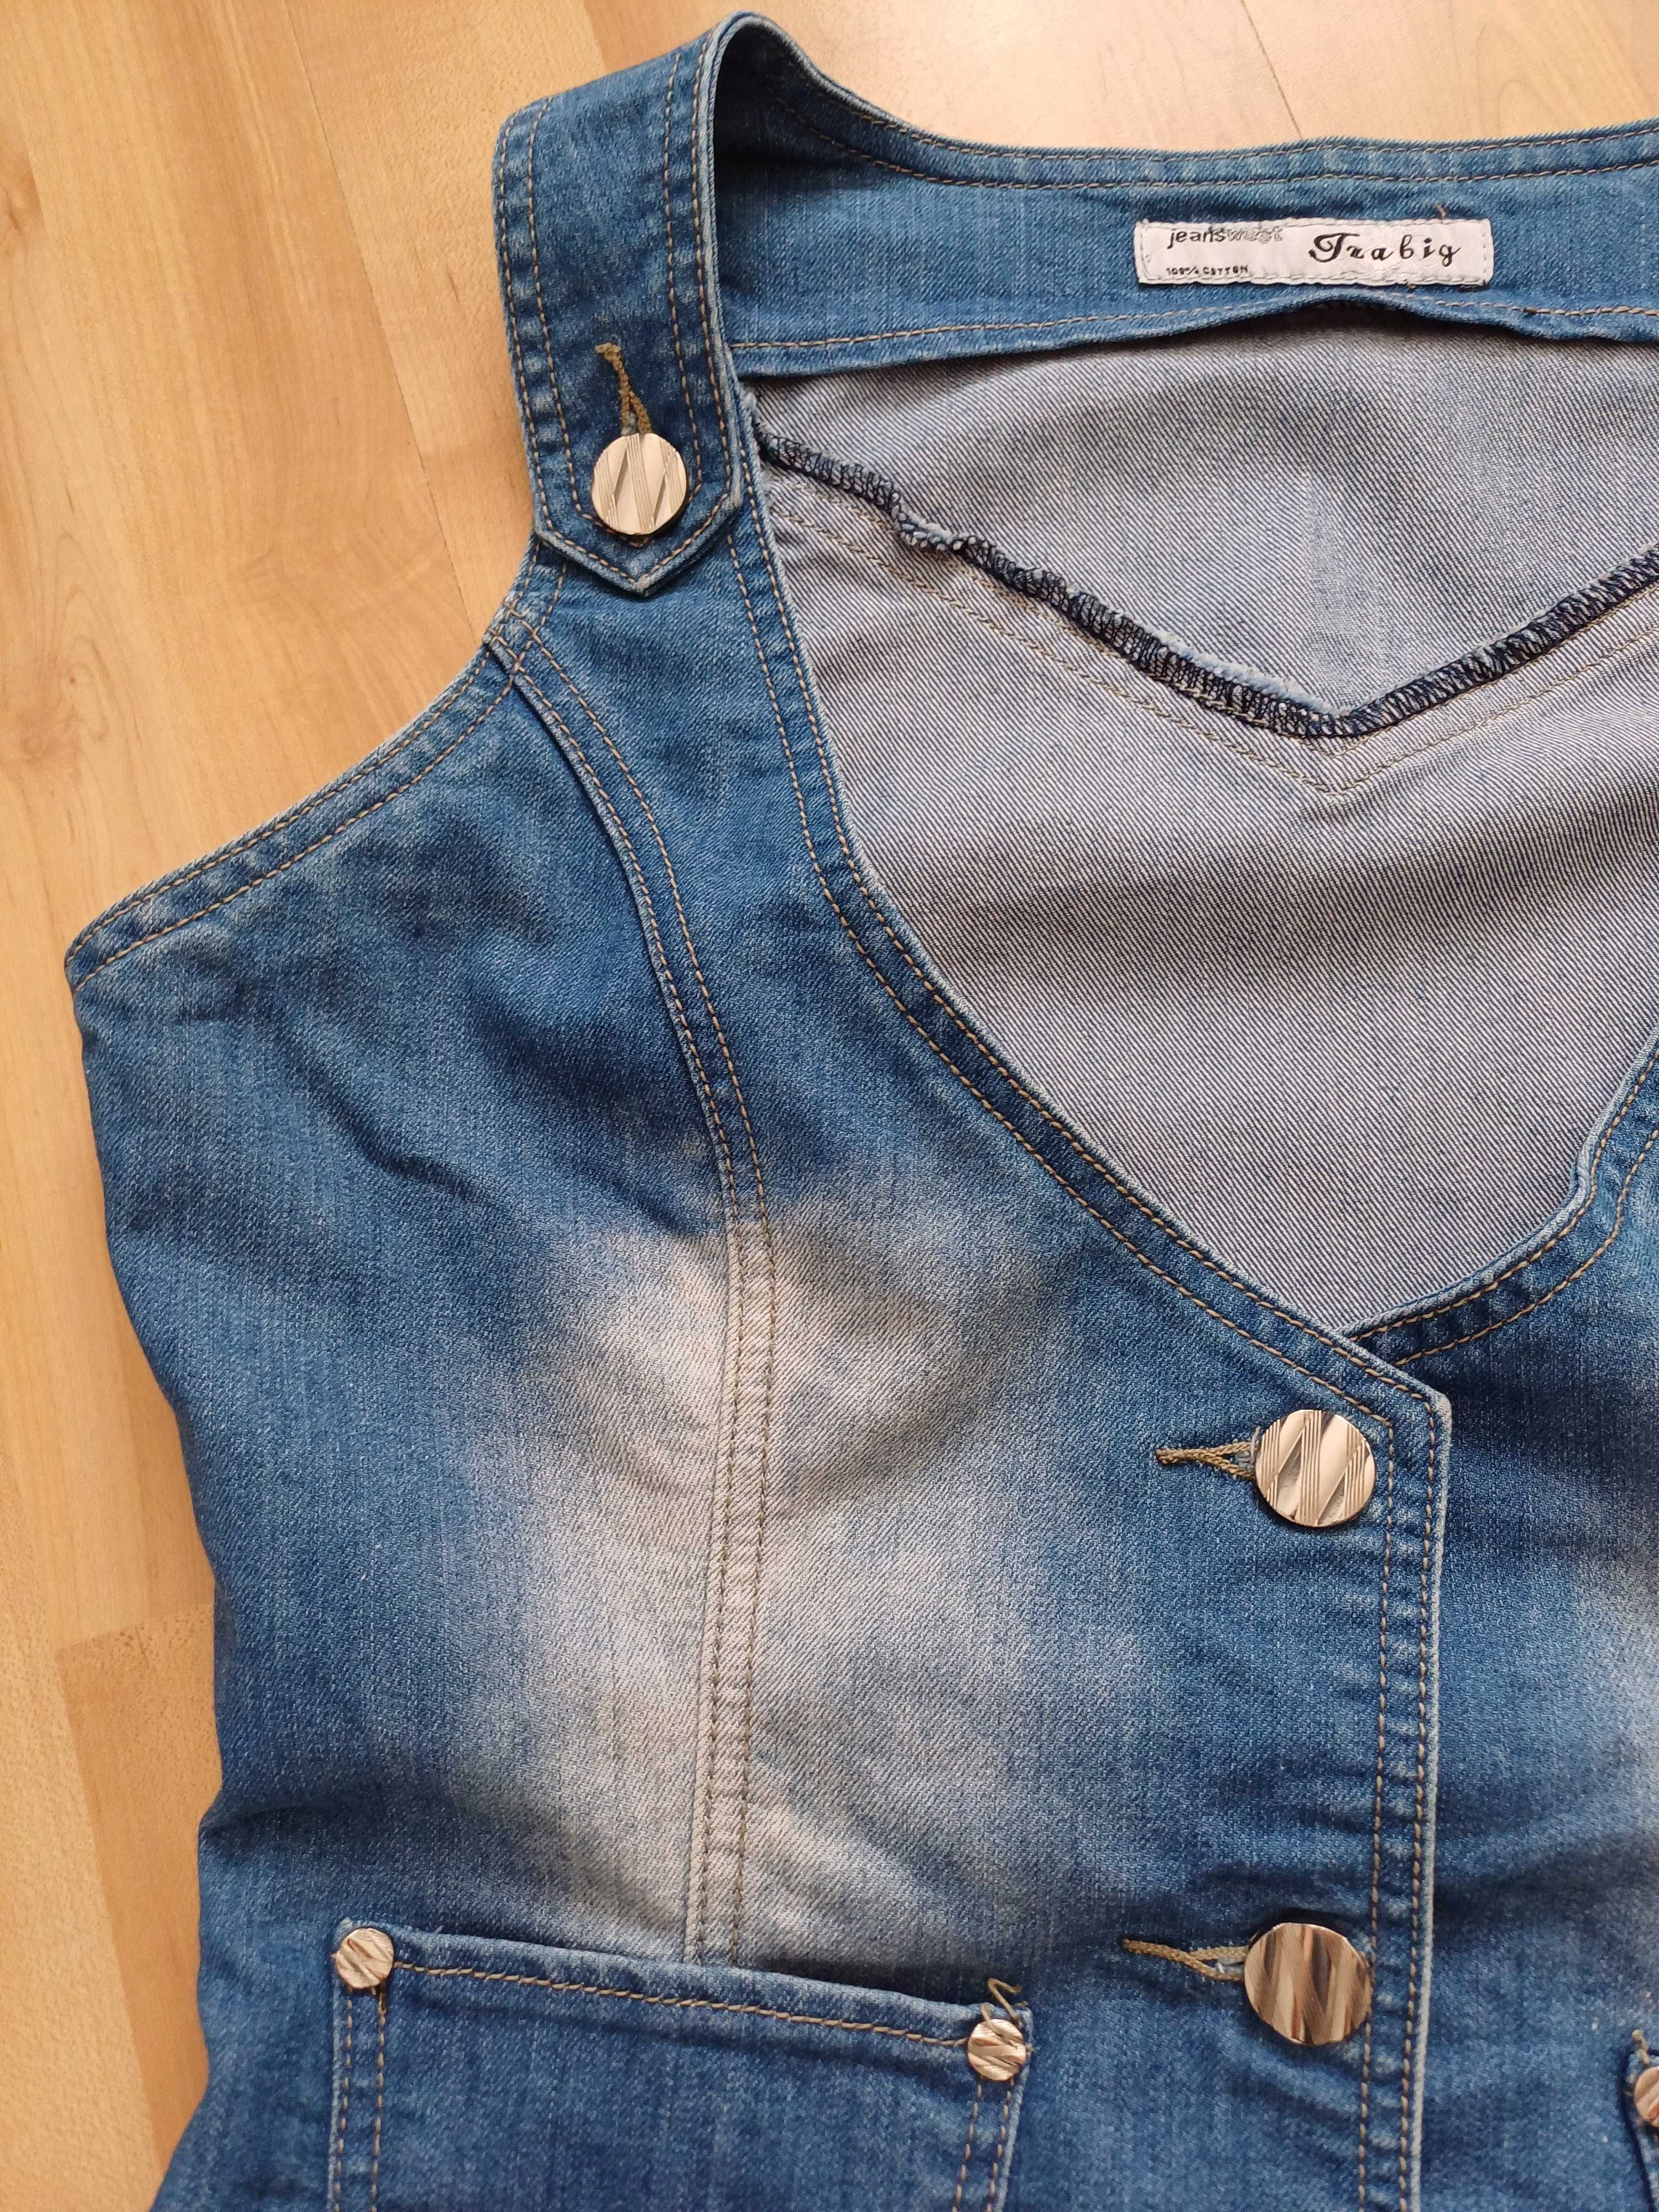 Kamizelka damska jeans na guziki niebieska XL/42 bawełna 100%